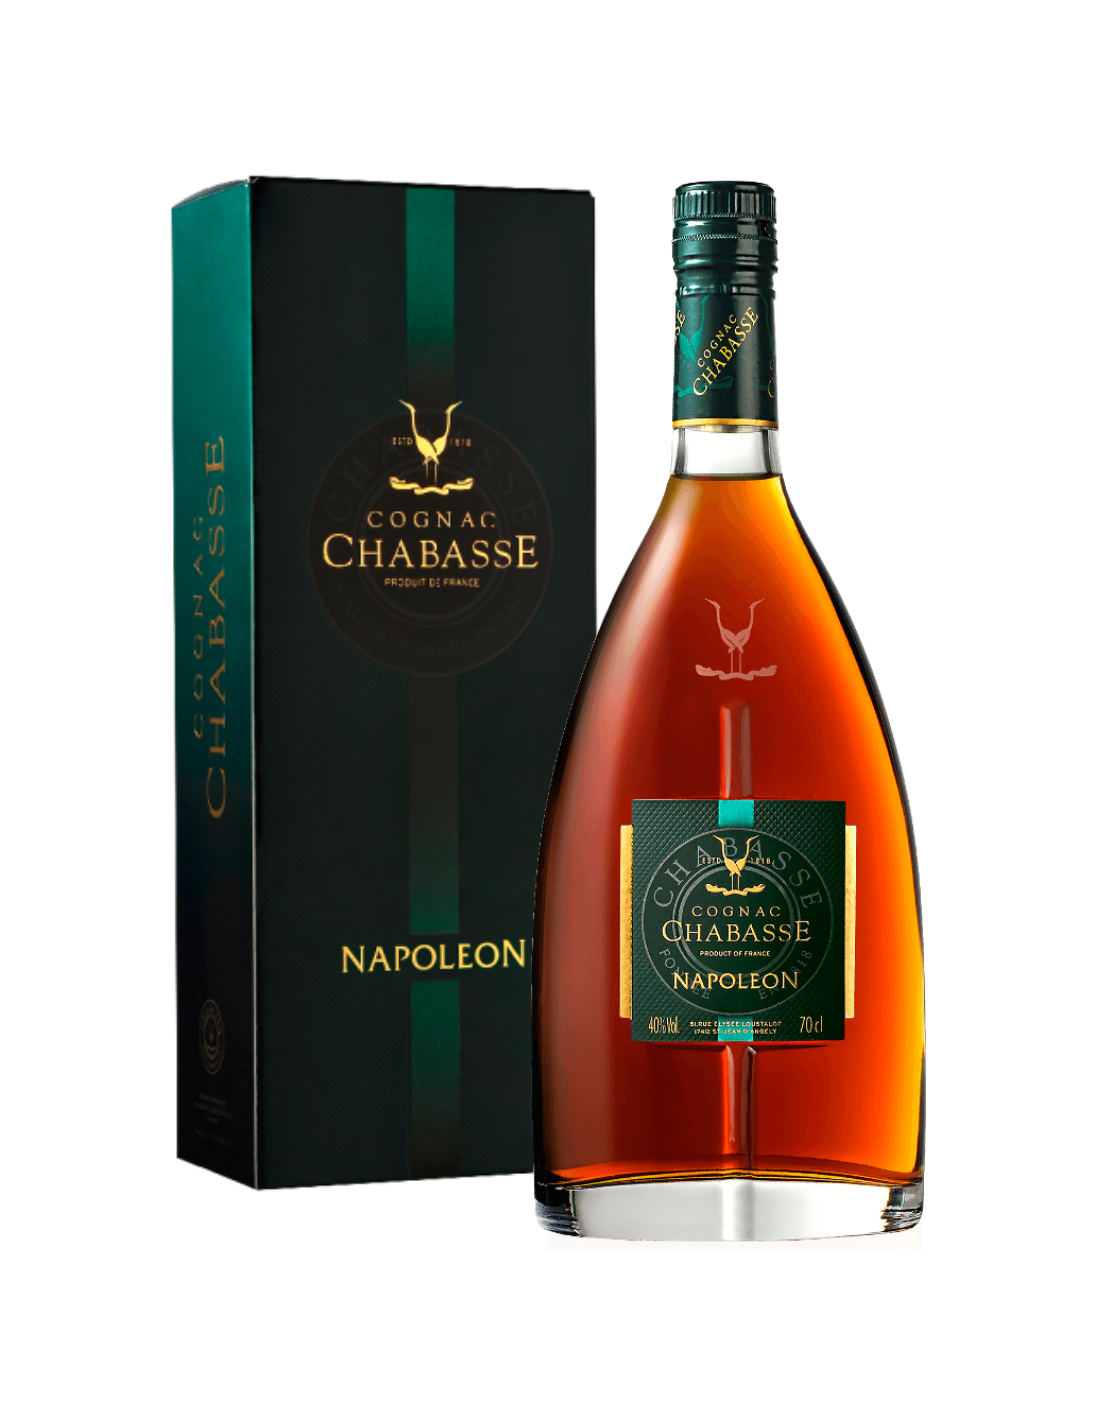 Coniac Chabasse Napoleon, 40% alc., 0.7L, Franta alcooldiscount.ro